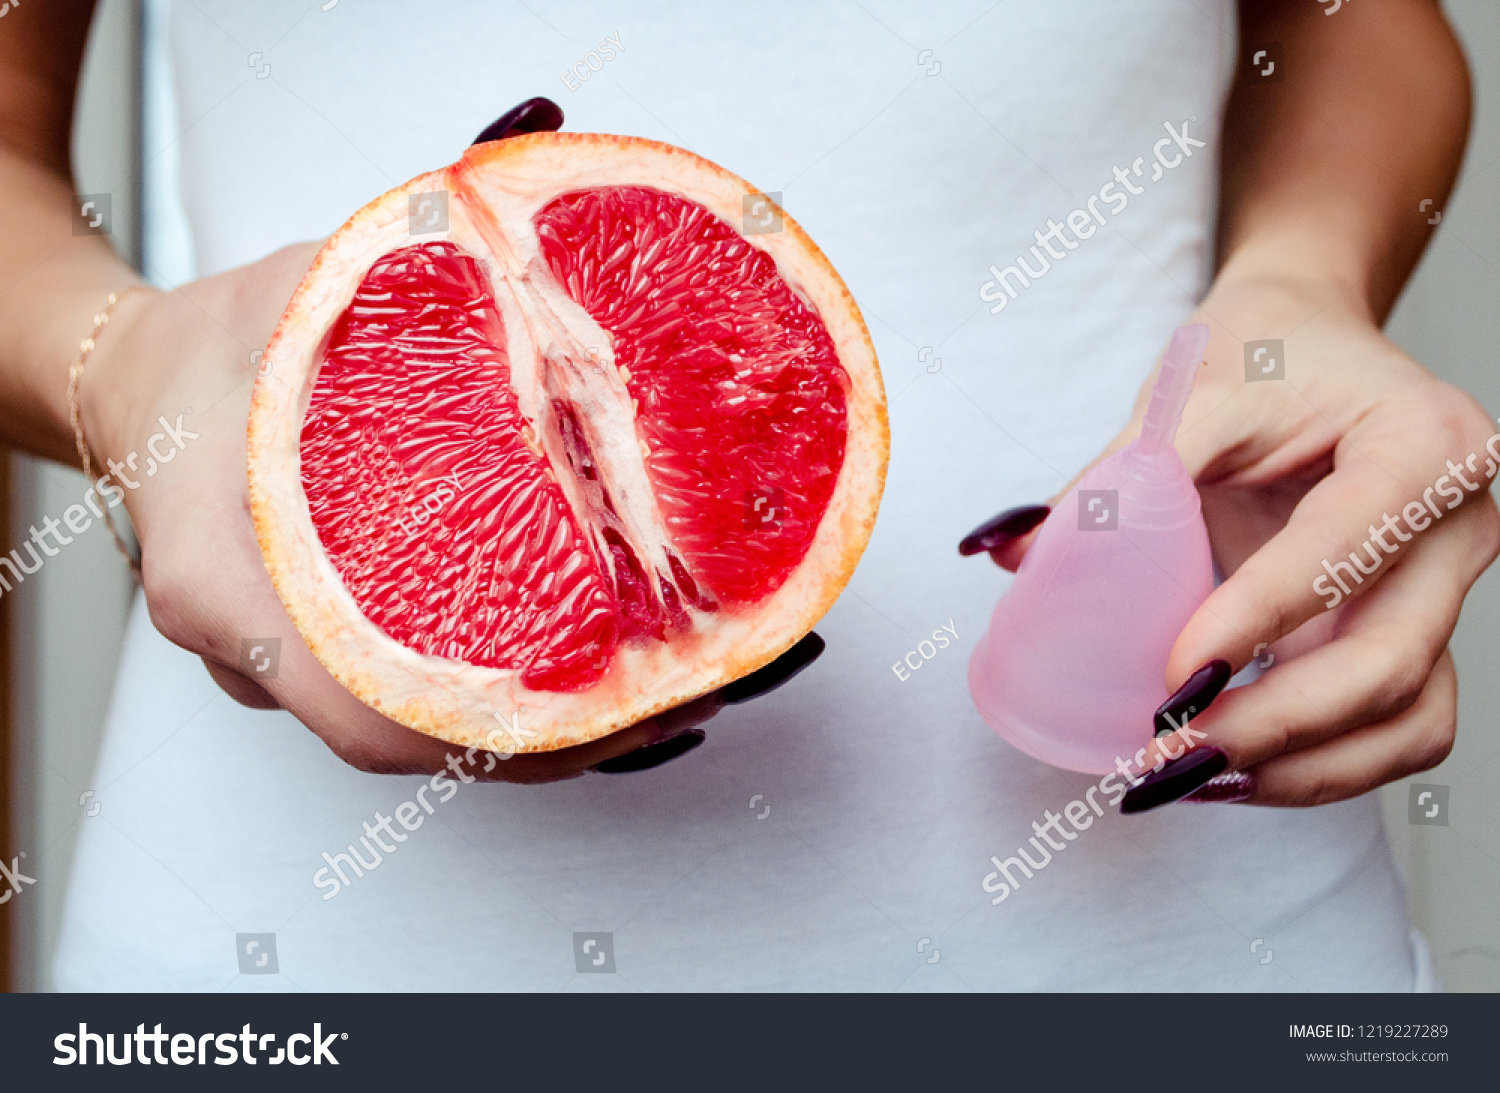 Грейпфрут похожий на вагину